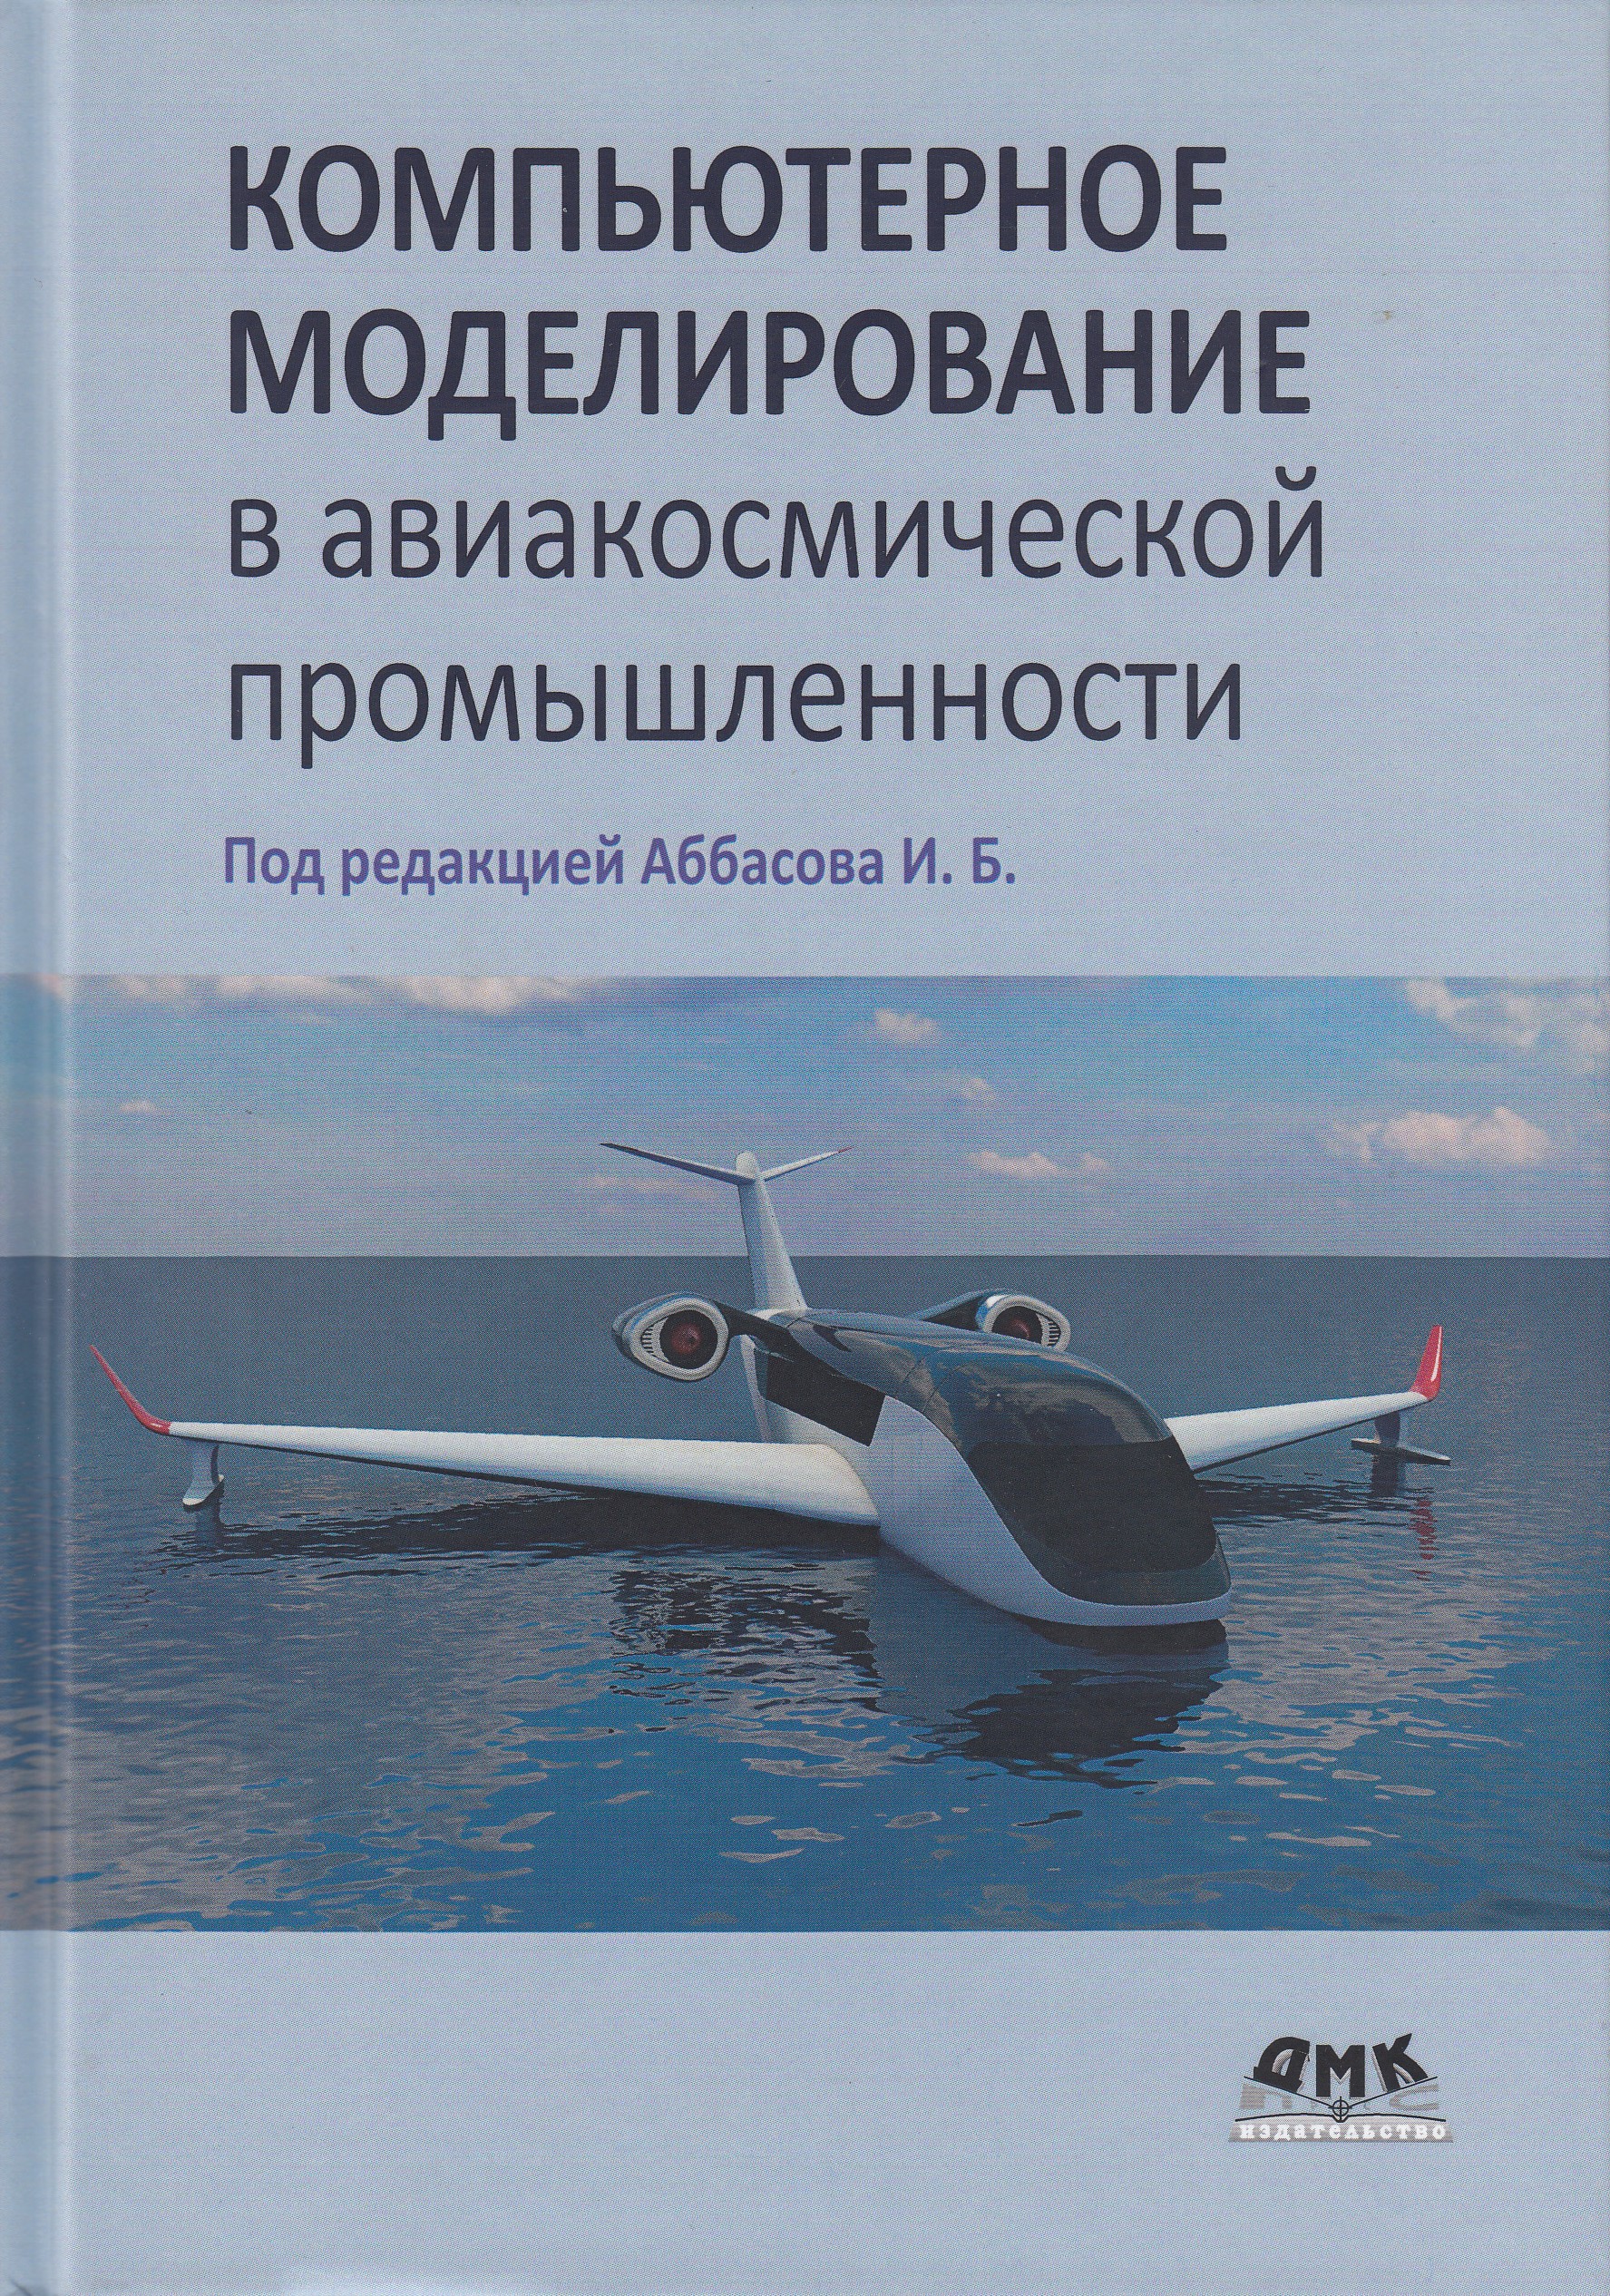 фото Книга компьютерное моделирование в авиакосмической промышленности дмк пресс